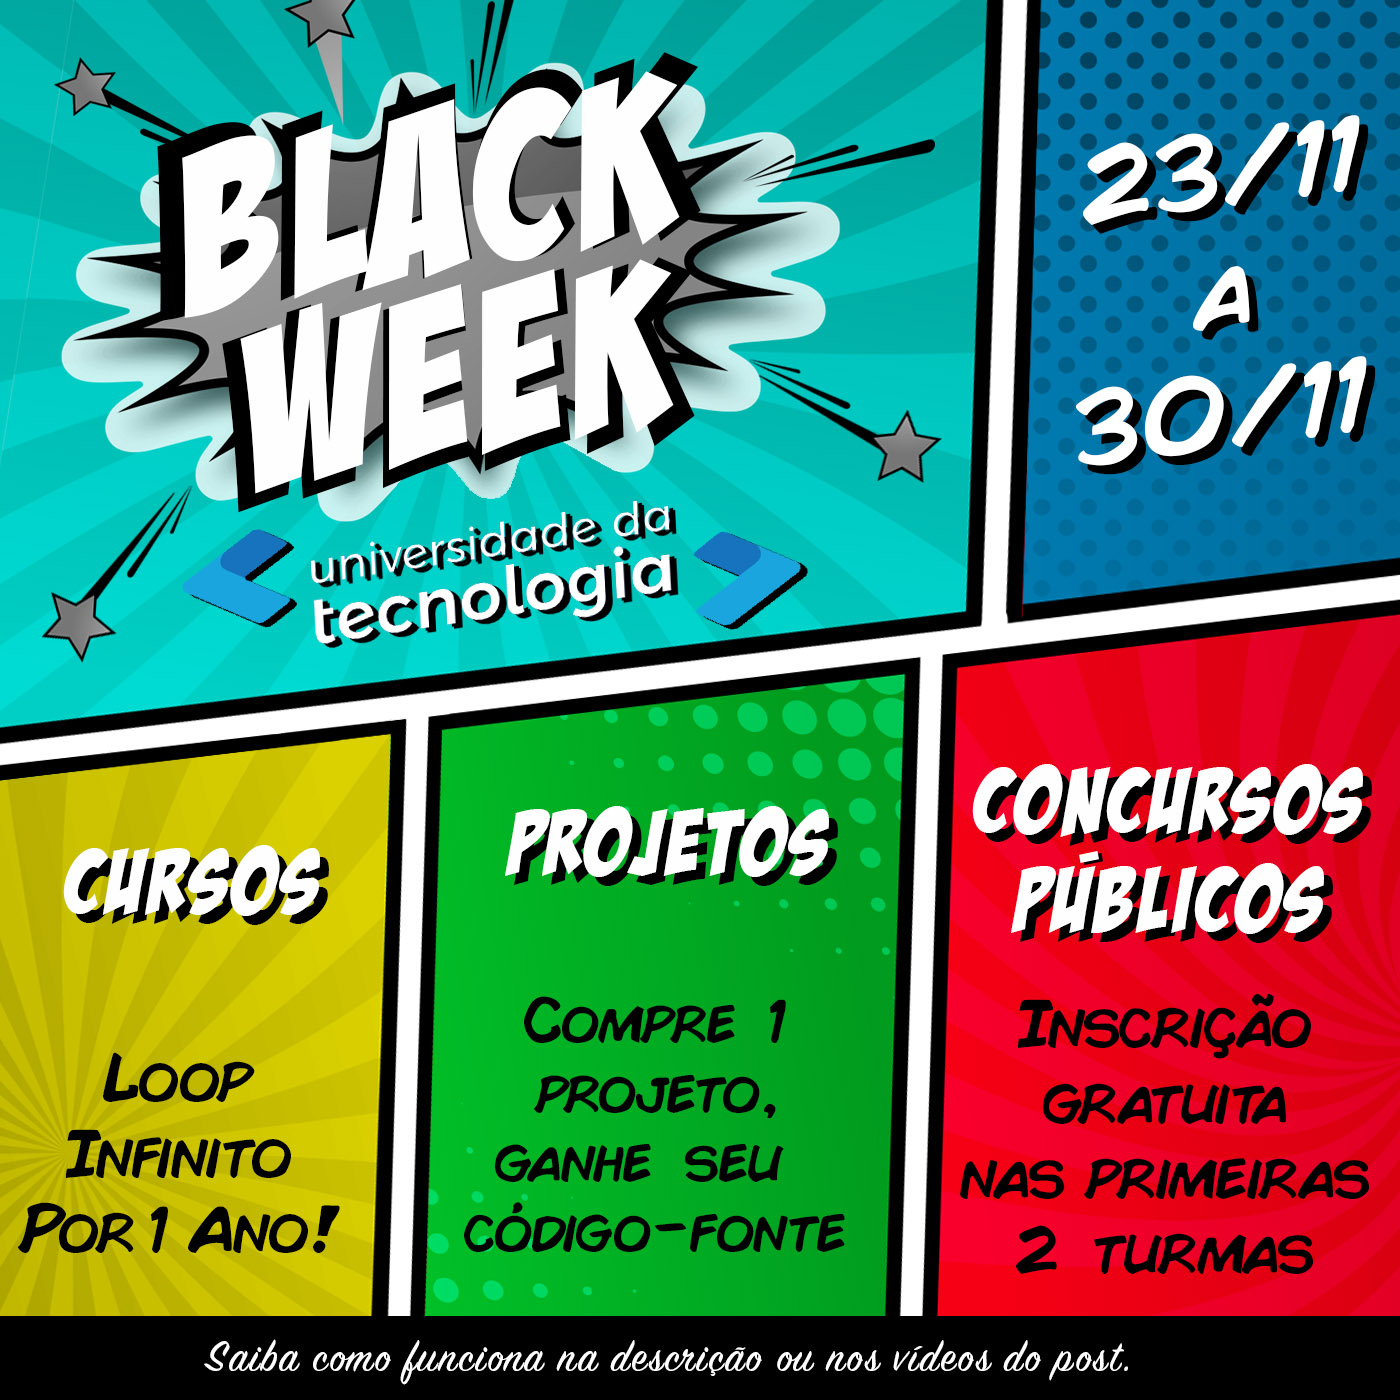 Black Week UTec 2018